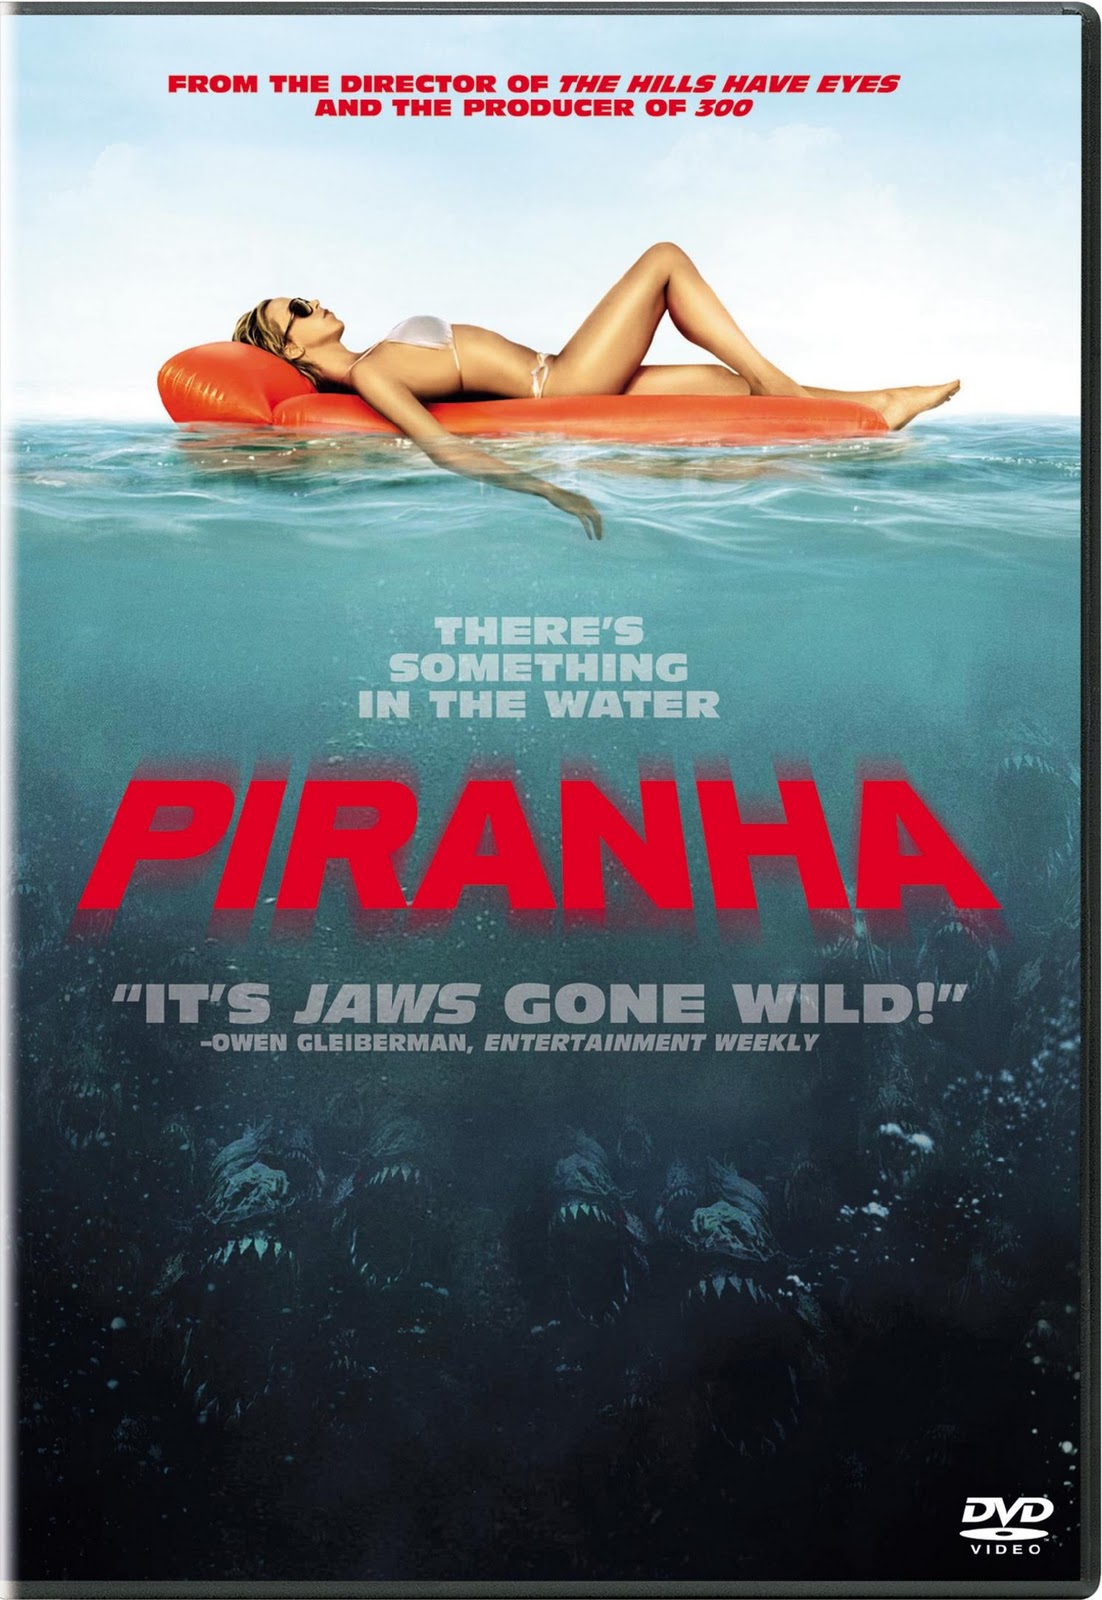 Anna Faris Xxx - Piranha or Piranha 3D Coming Home Soon - sandwichjohnfilms